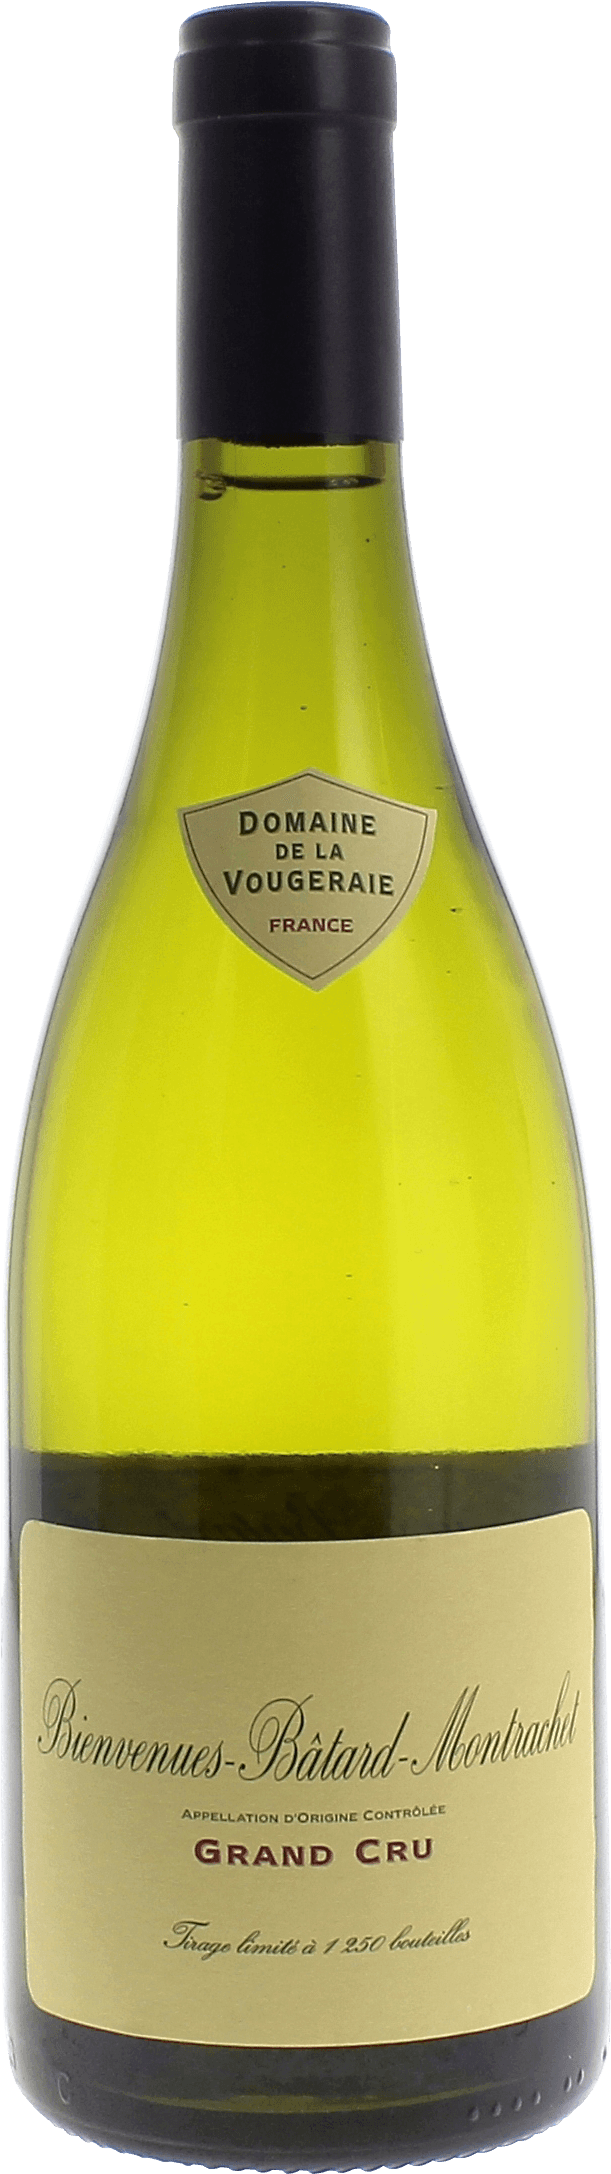 Bienvenue batard montrachet grand cru 2015 Domaine VOUGERAIE, Bourgogne blanc